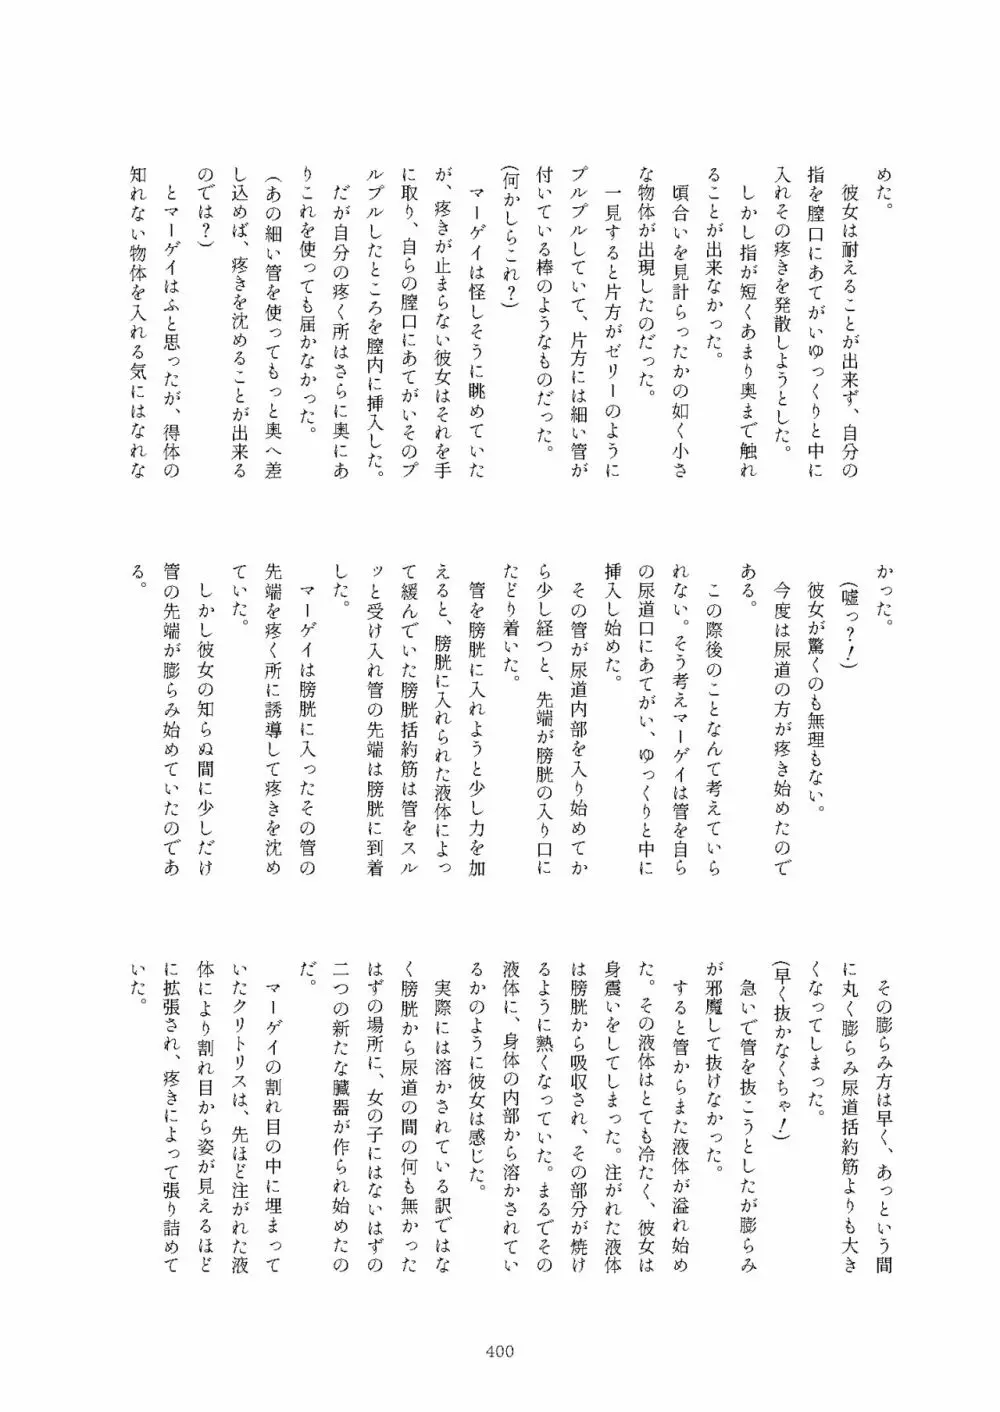 フレンズまえしっぽ合同誌 - page400